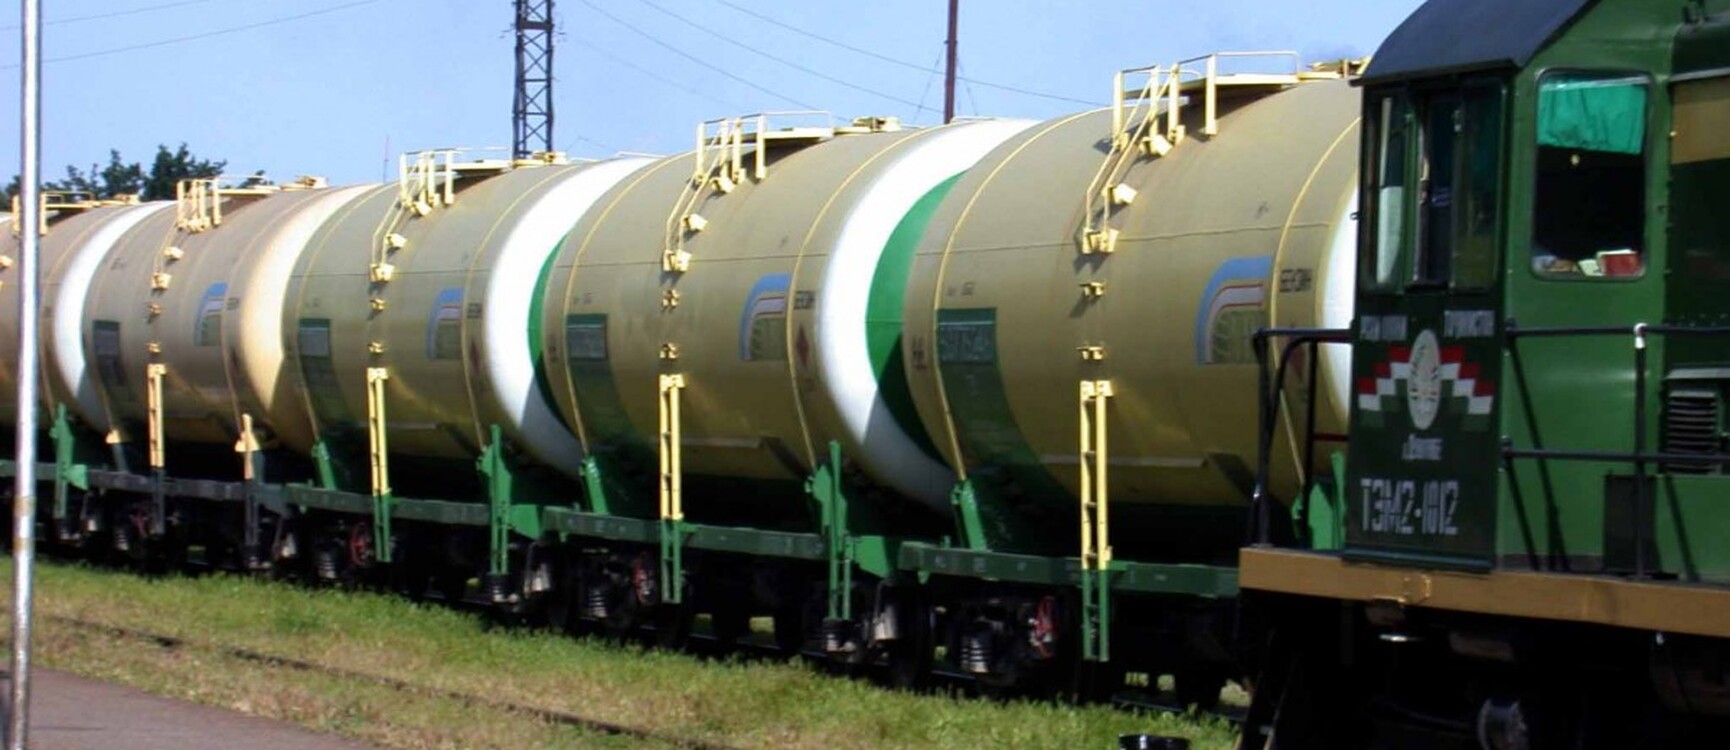 Кыргызстан начал получать бензин с пошлиной, это может привести к подорожанию топлива — Союз нефтетрейдеров — Today.kg